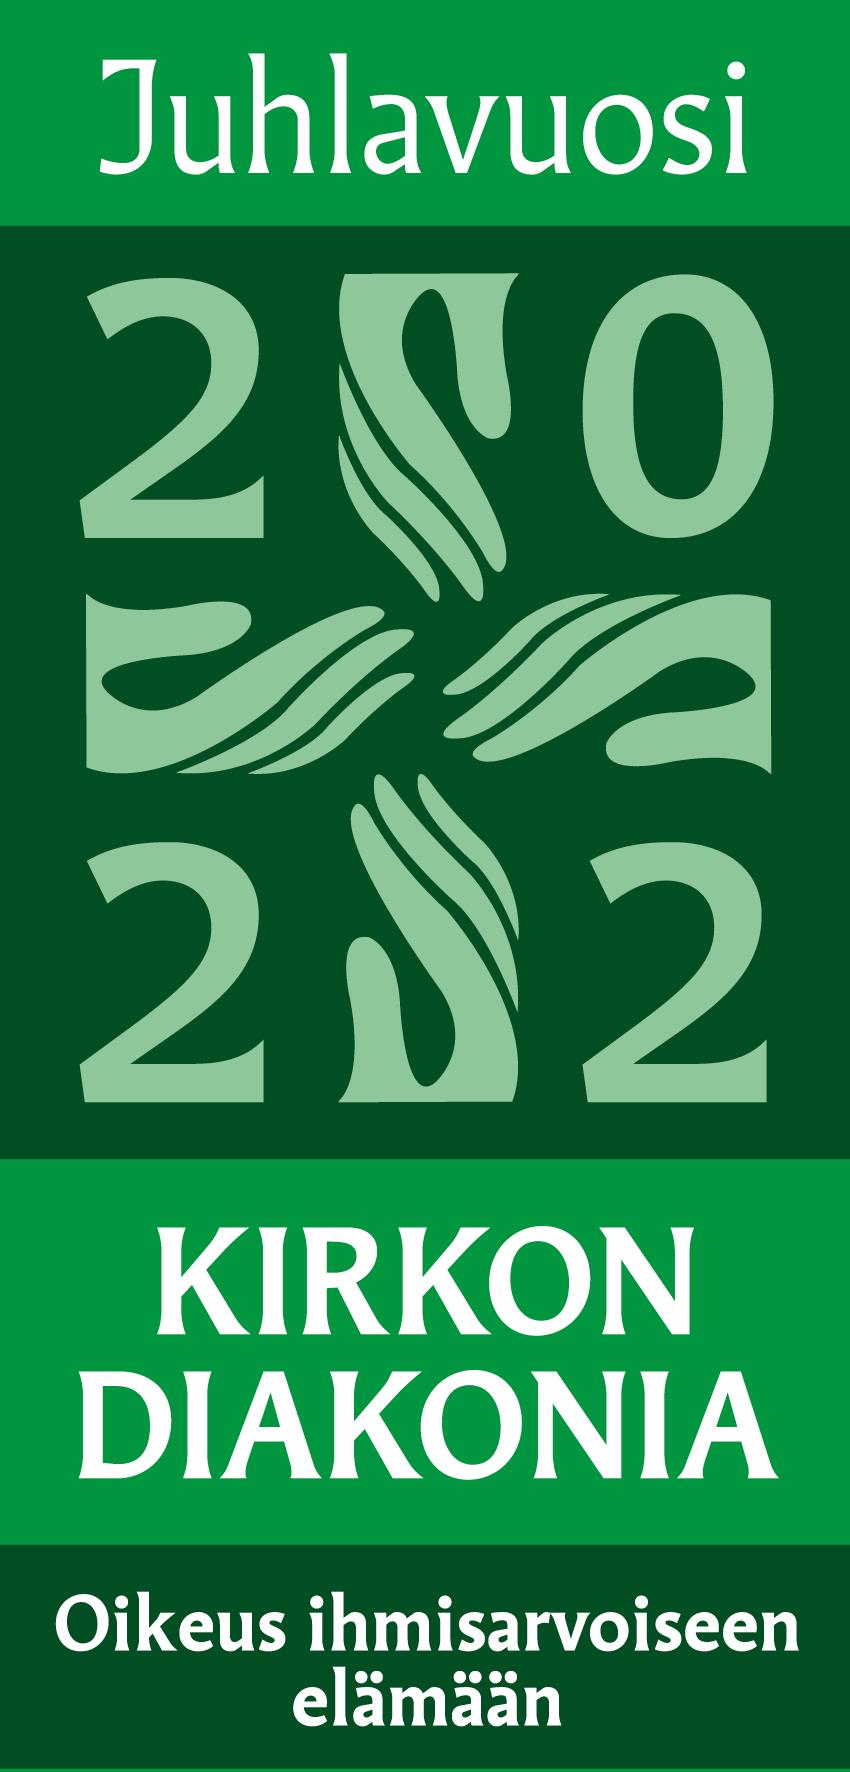 vihreä logo juhlavuosi 2020 kirkon diakonia oikeus ihmisarvoiseen elämään